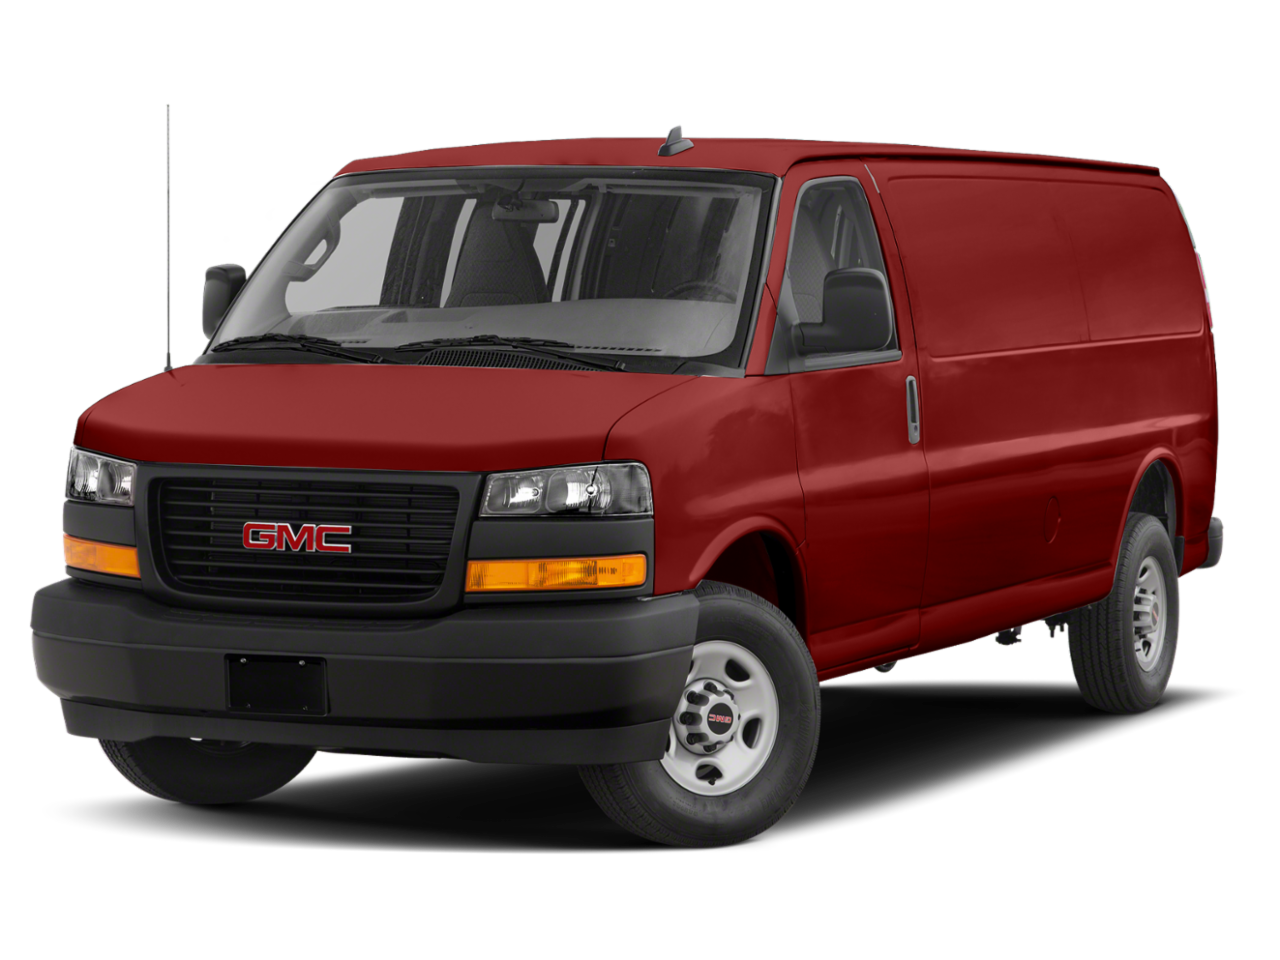 New 2021 GMC Savana Cargo Van from your Great Bend KS dealership